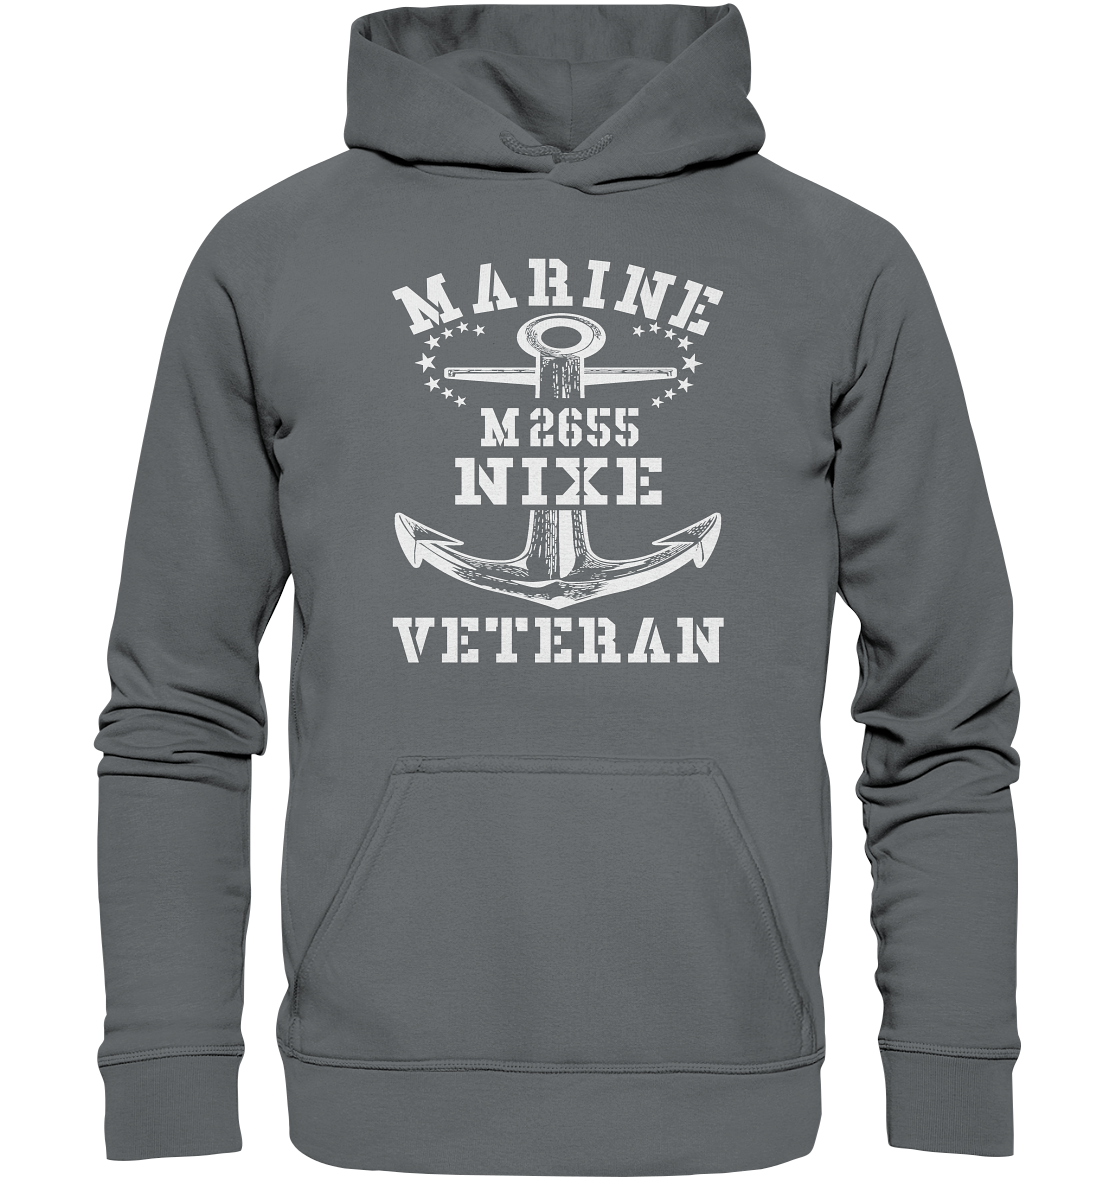 BiMi M2655 NIXE Marine Veteran - Basic Unisex Hoodie